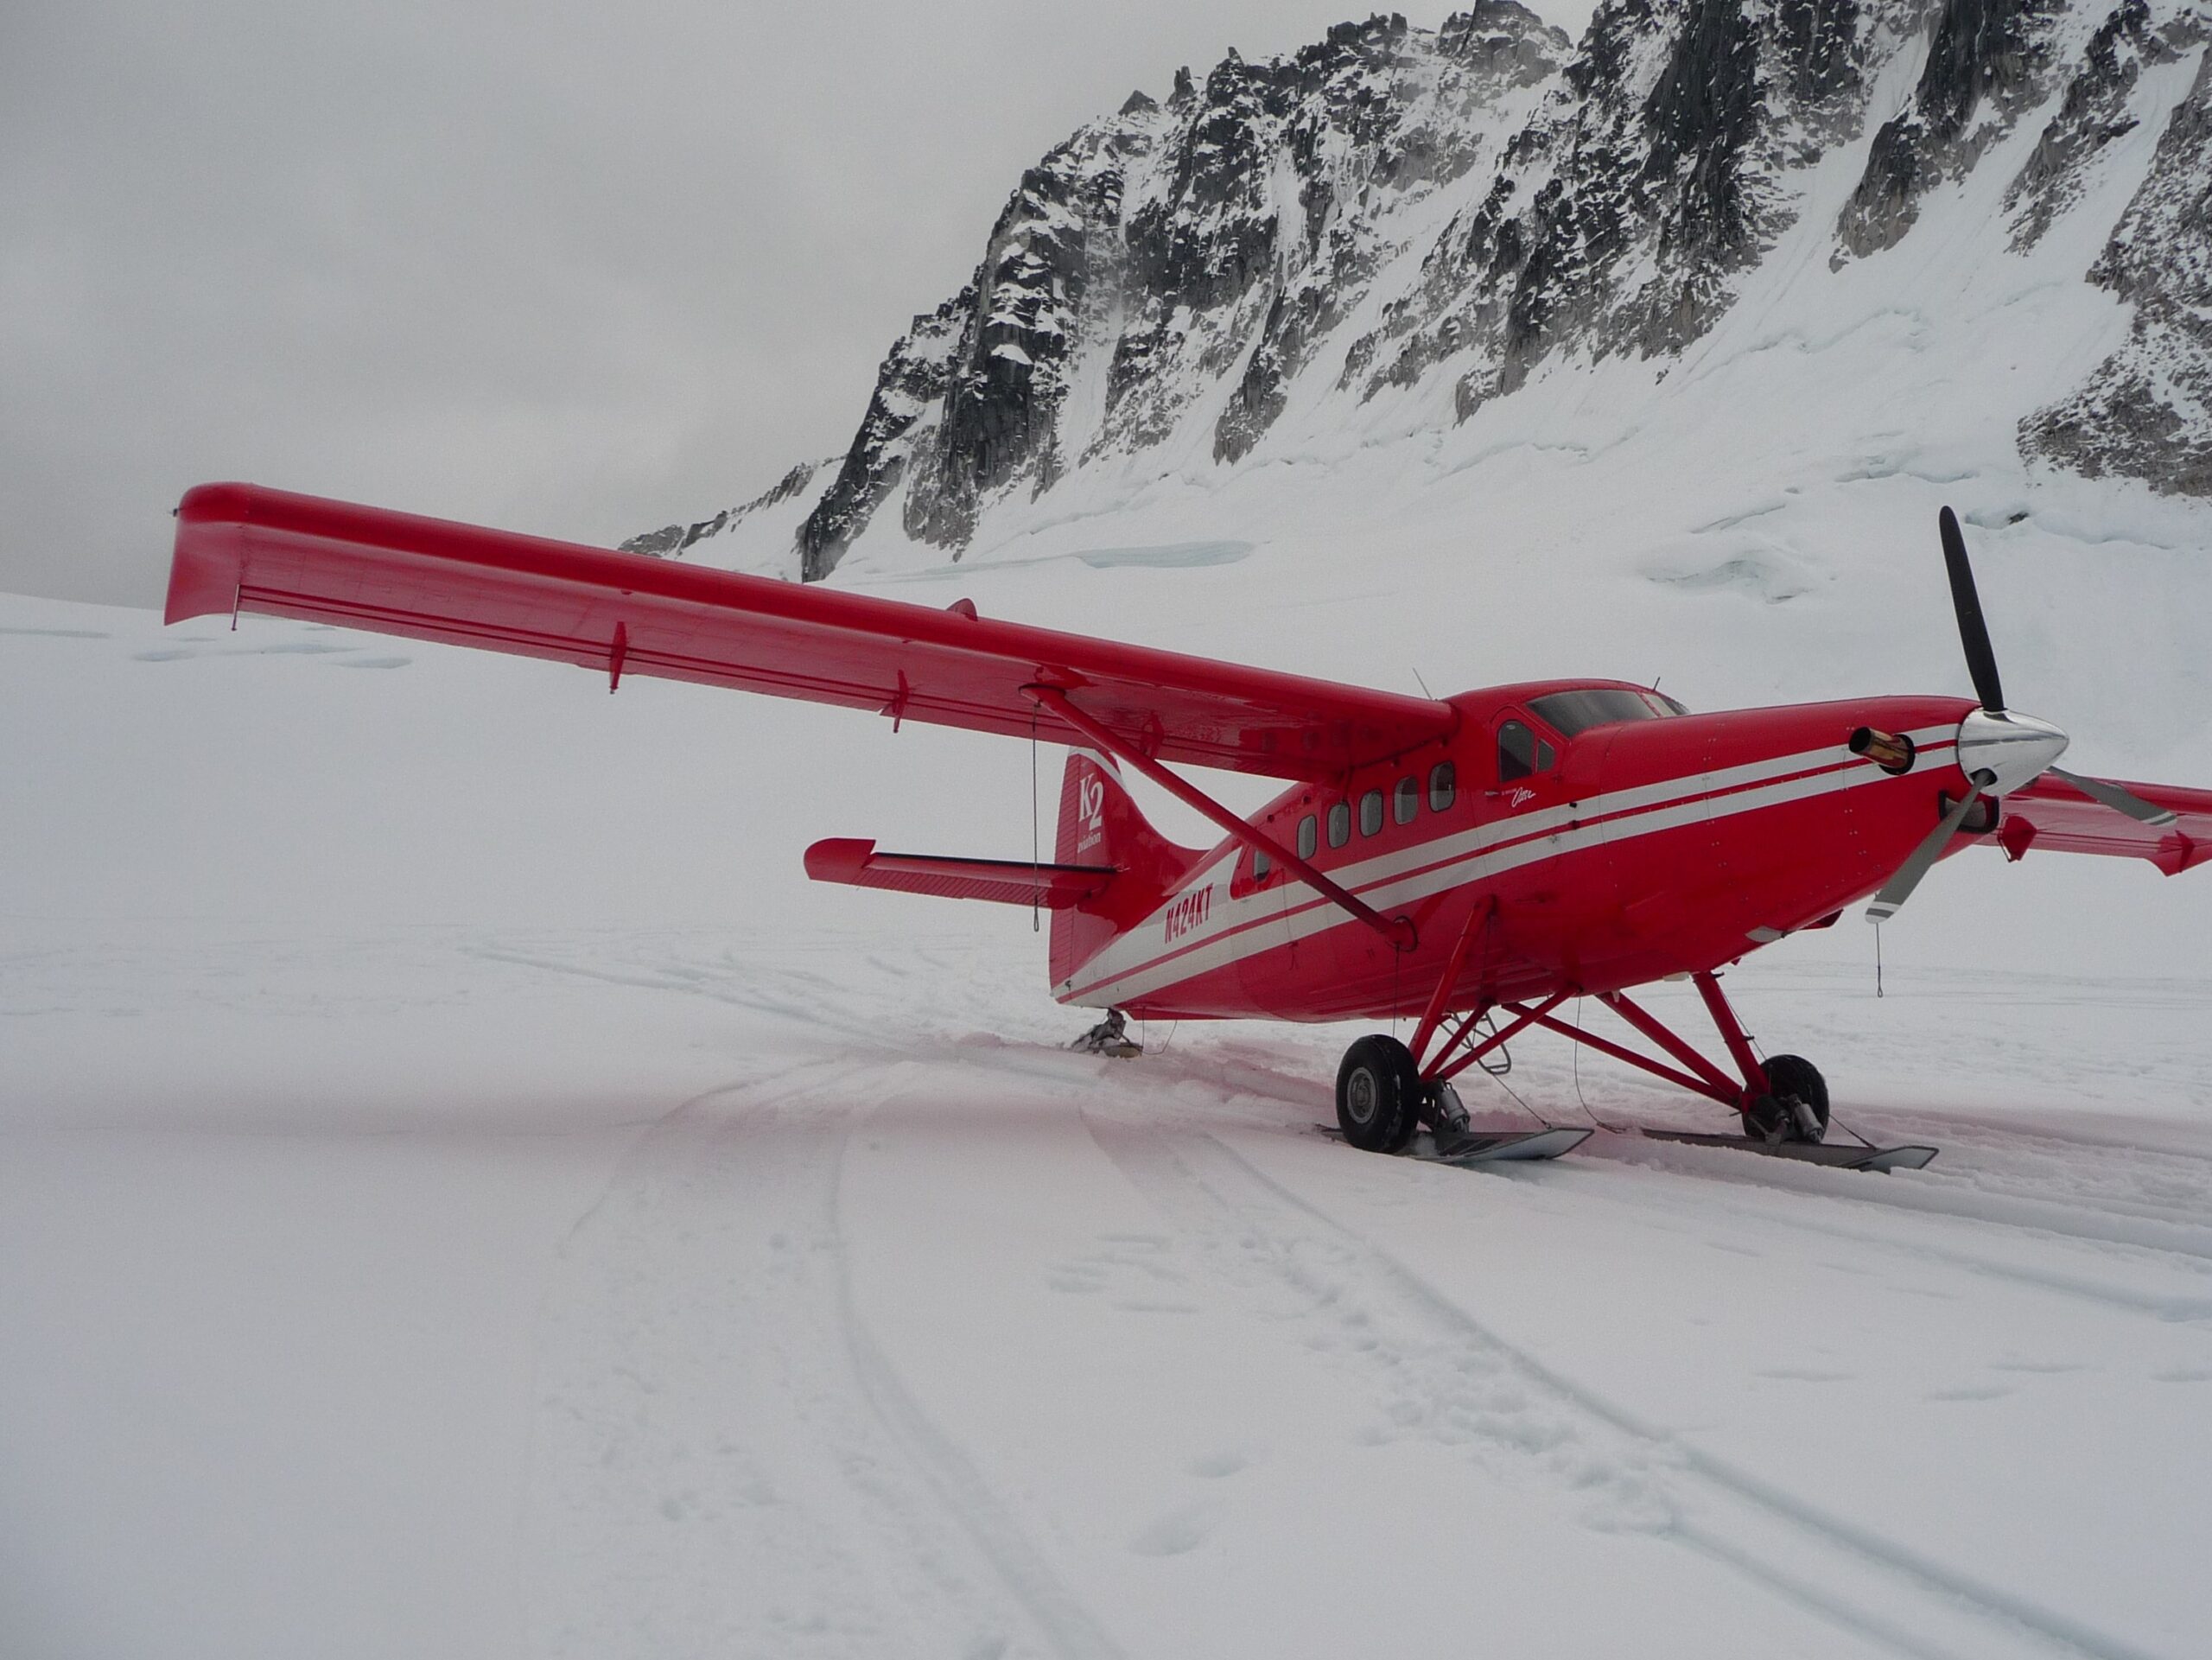 Alaska, Denali Mountain, Mount McKinley, Kleinflugzeug, Gletscher, Schnee, Berge, der Reisekoffer, reisen